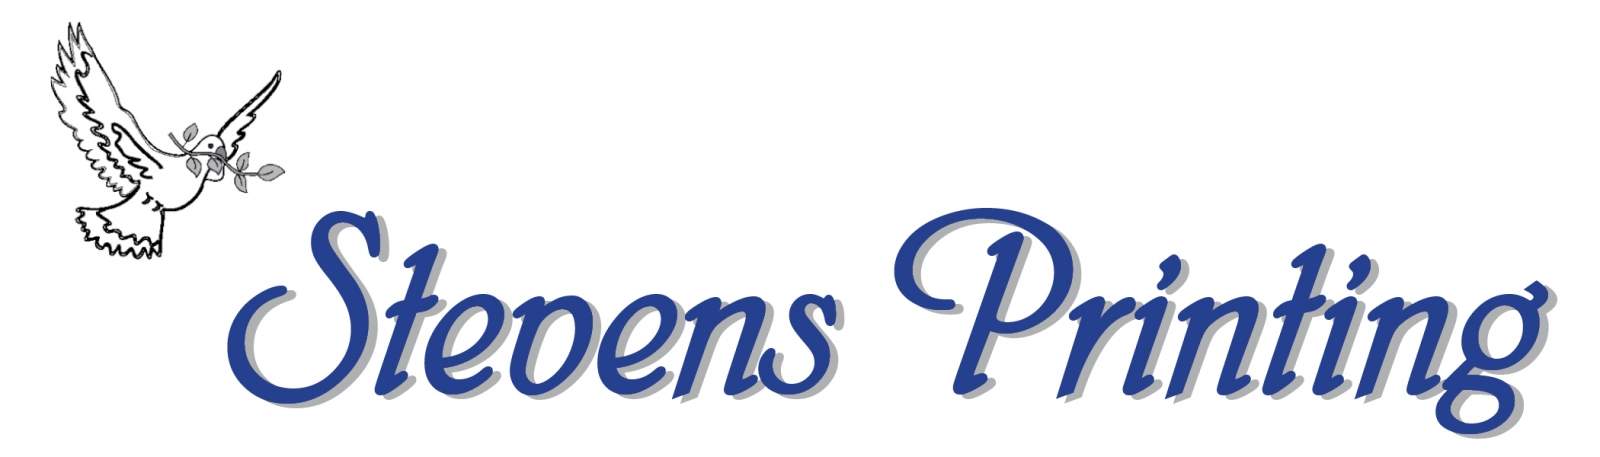 Stevens Printing Logo